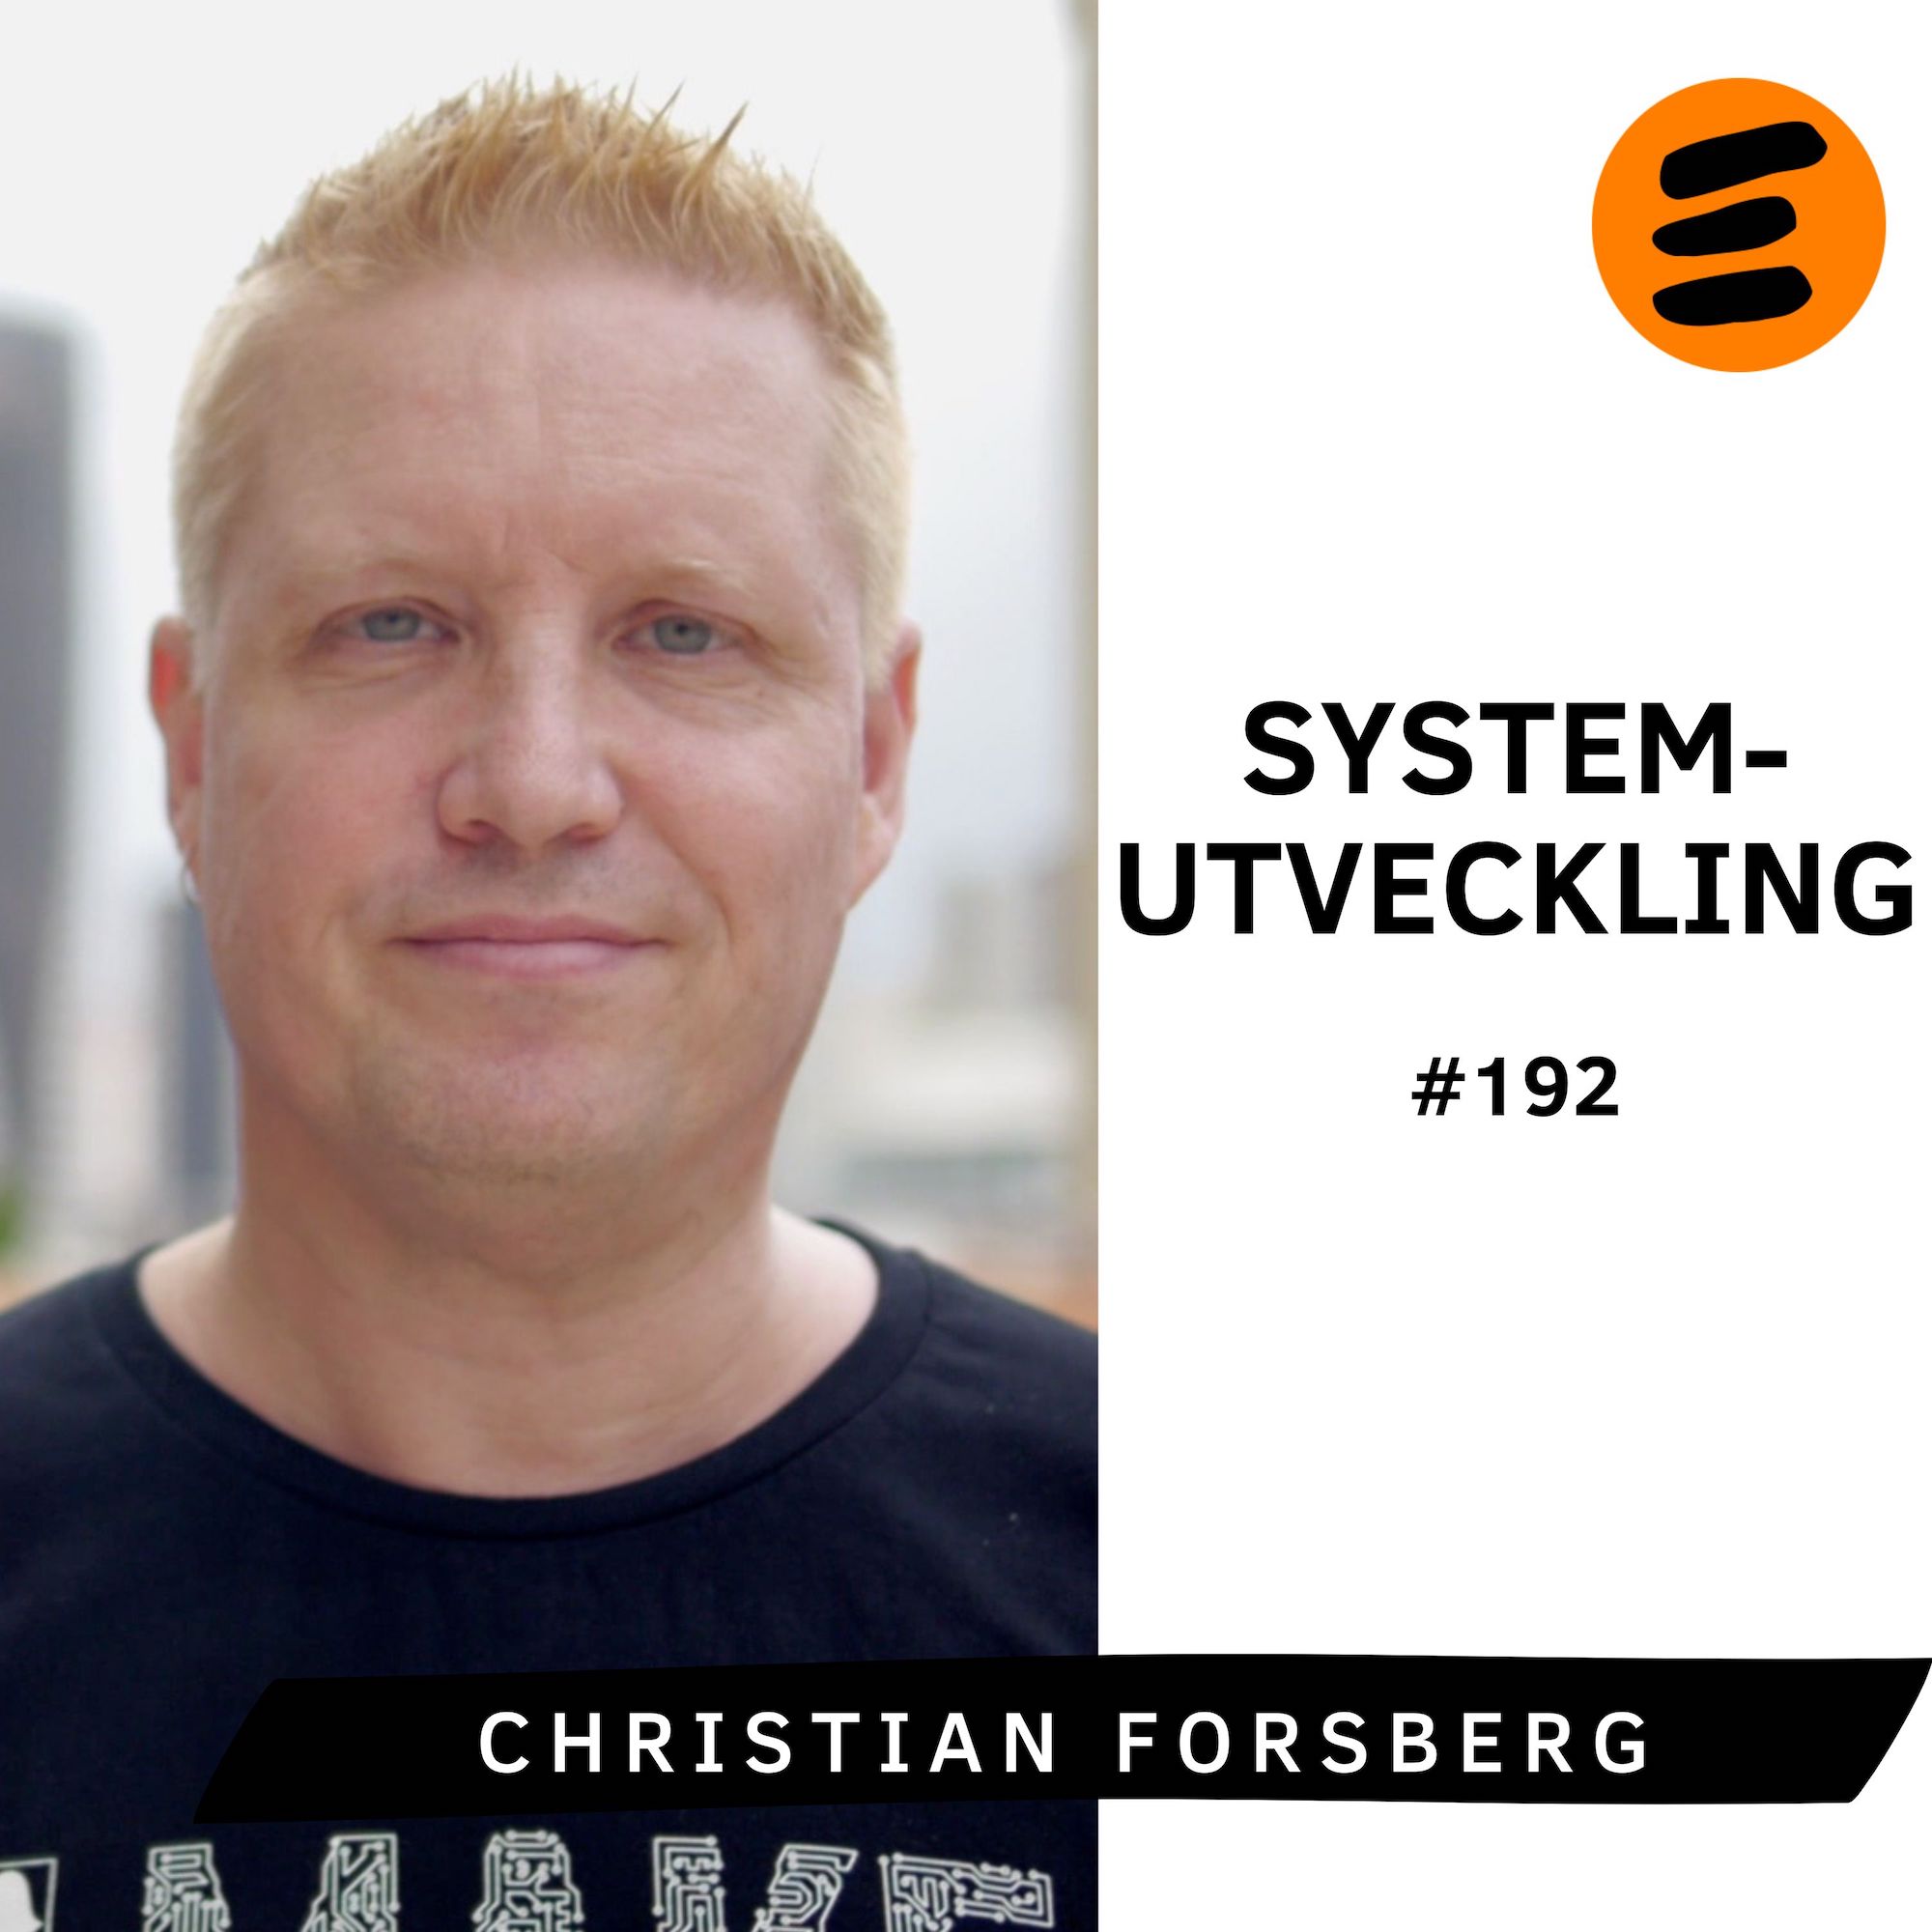 Hur man lyckas med systemutveckling. Christian Forsberg (# 192)